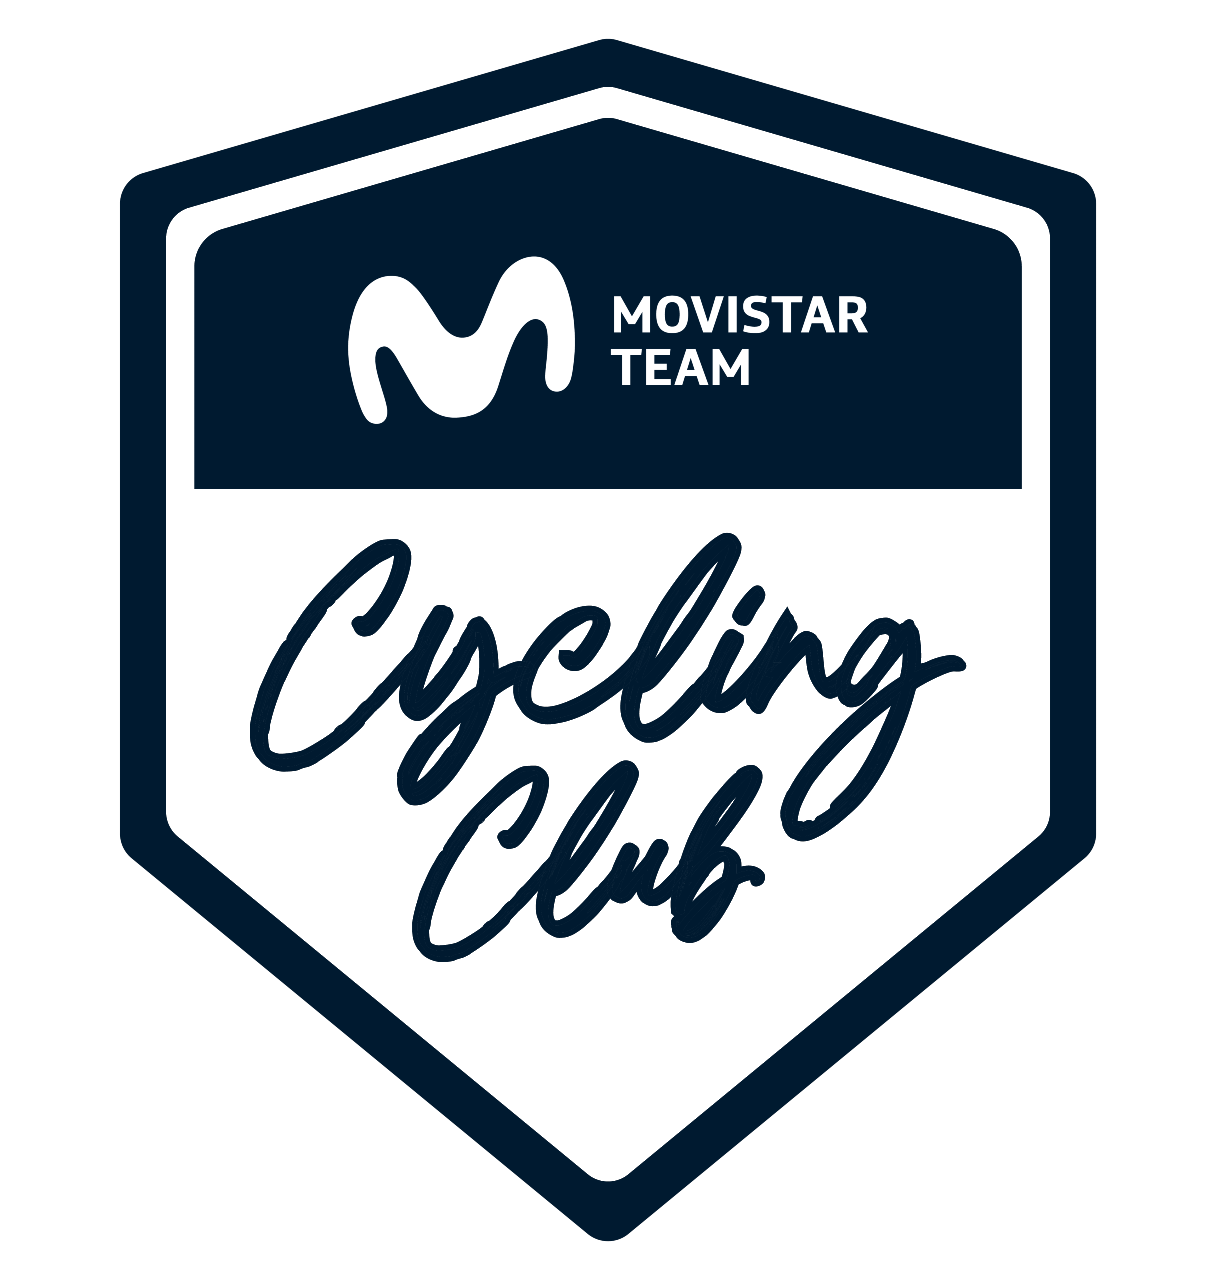 Movistar Team Club